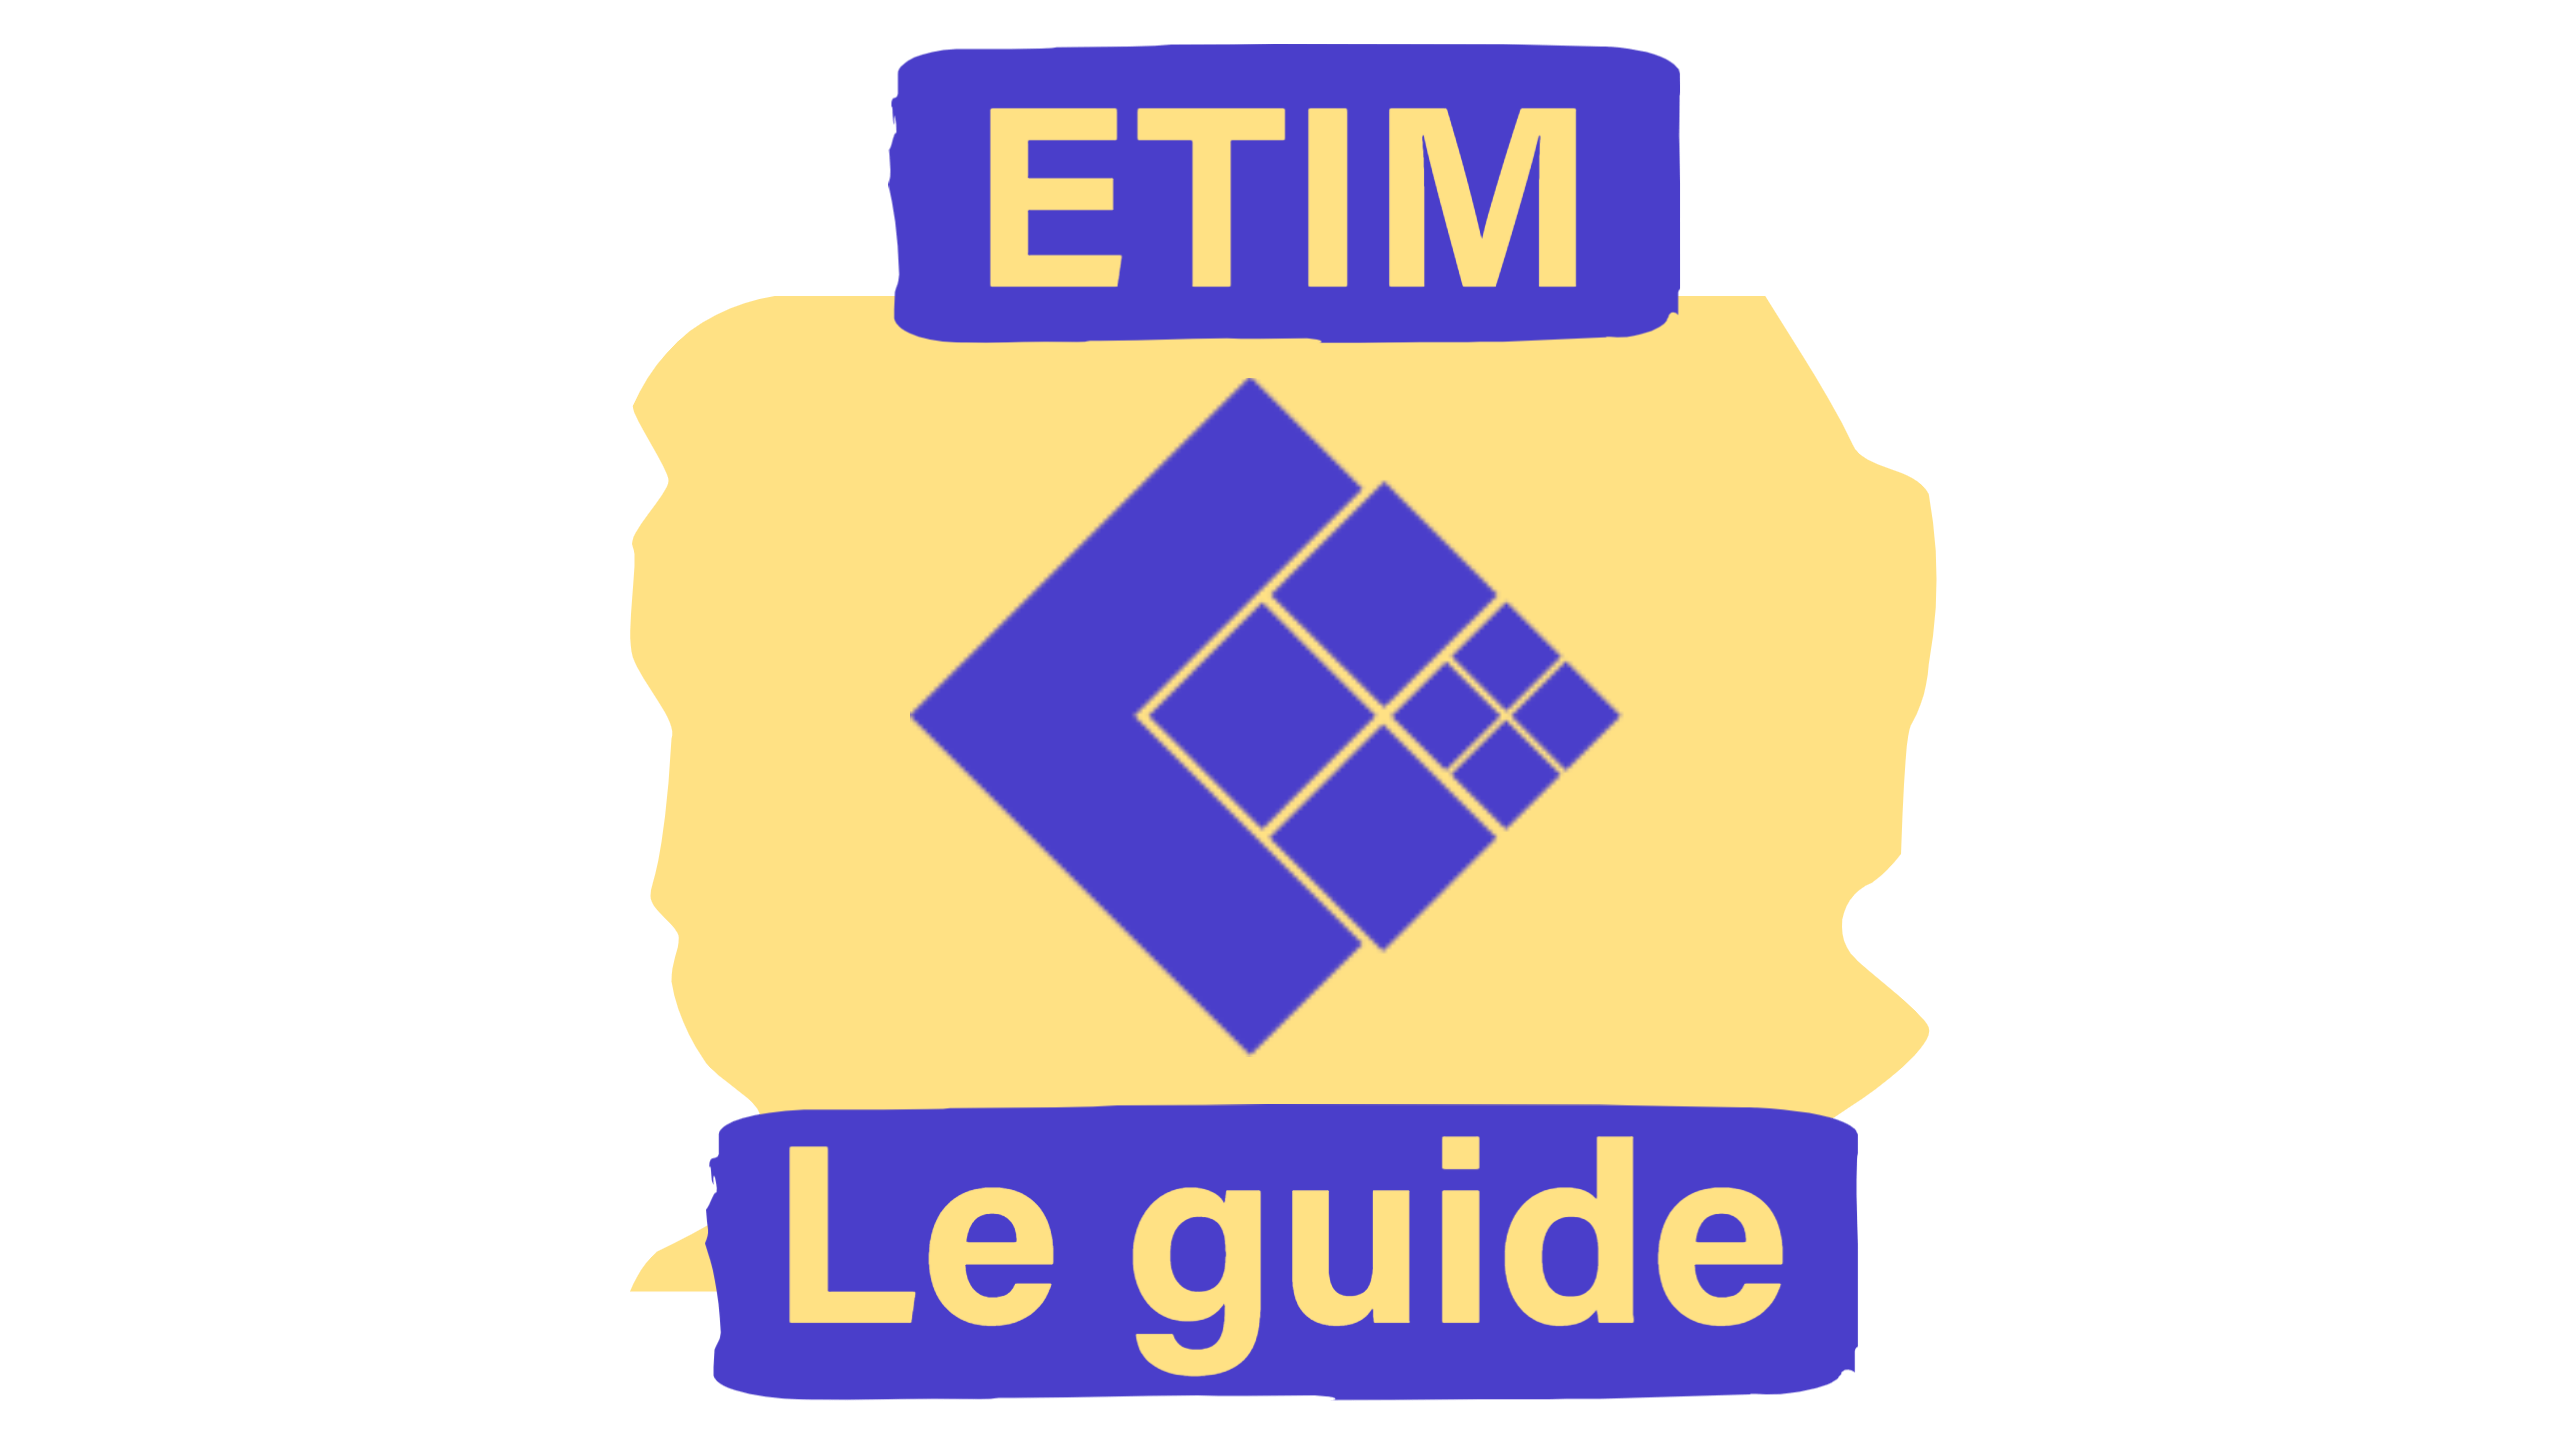 Les 5 étapes pour utiliser ETIM en tant que fabricant